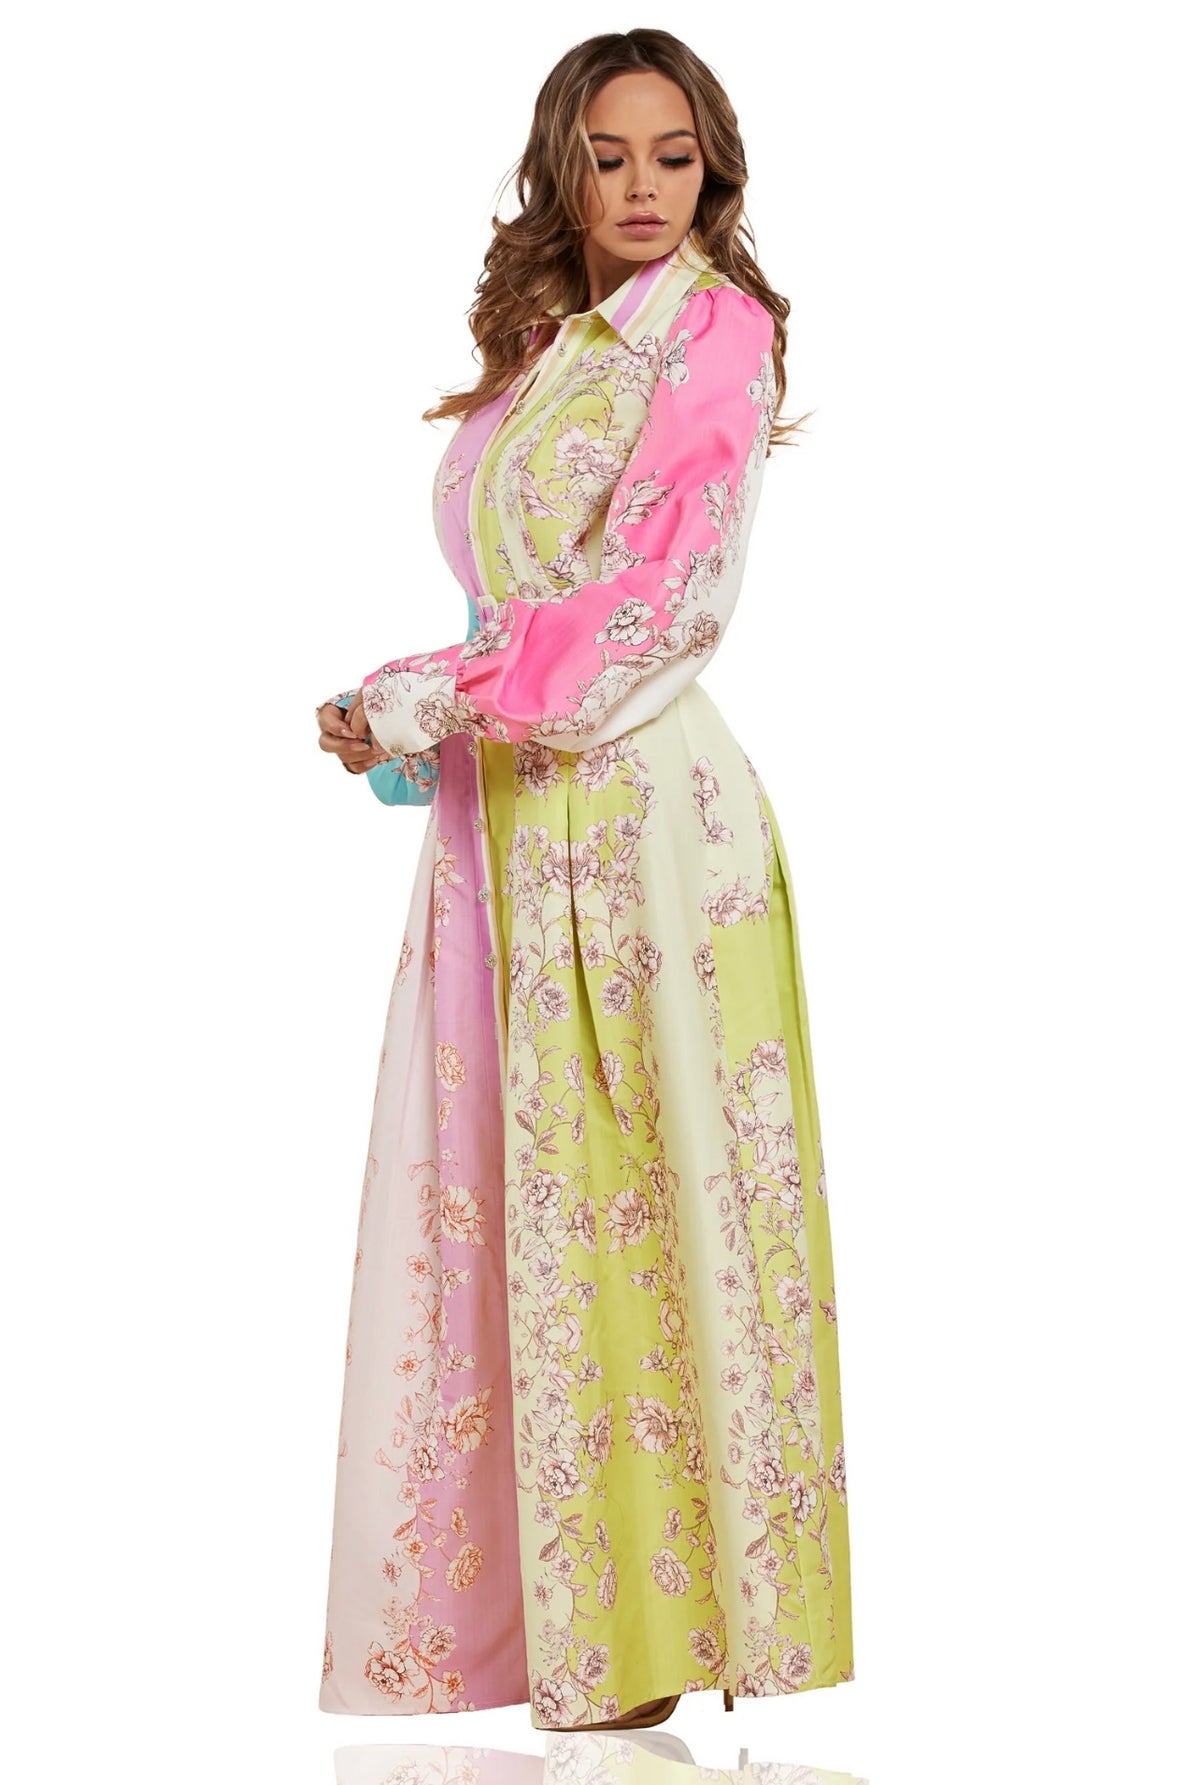 Floral print color block maxi dress.